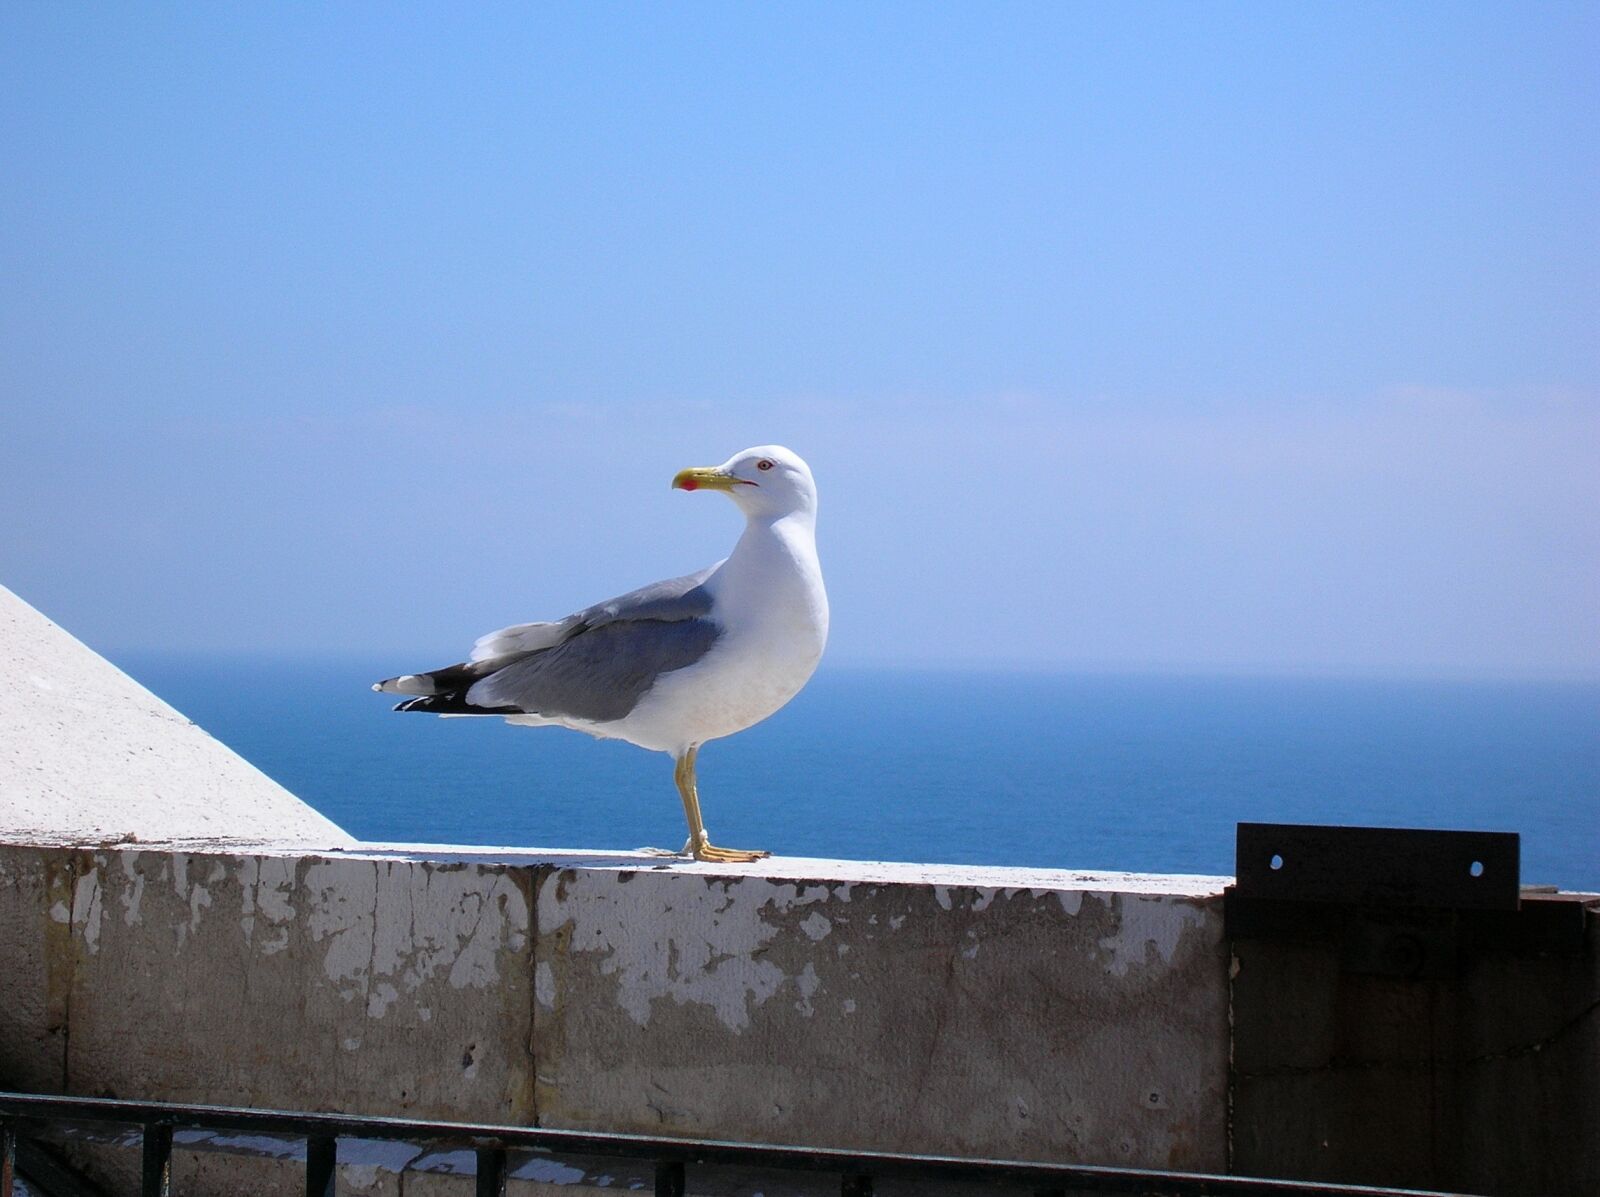 Nikon E4100 sample photo. Bird, sea, sky photography